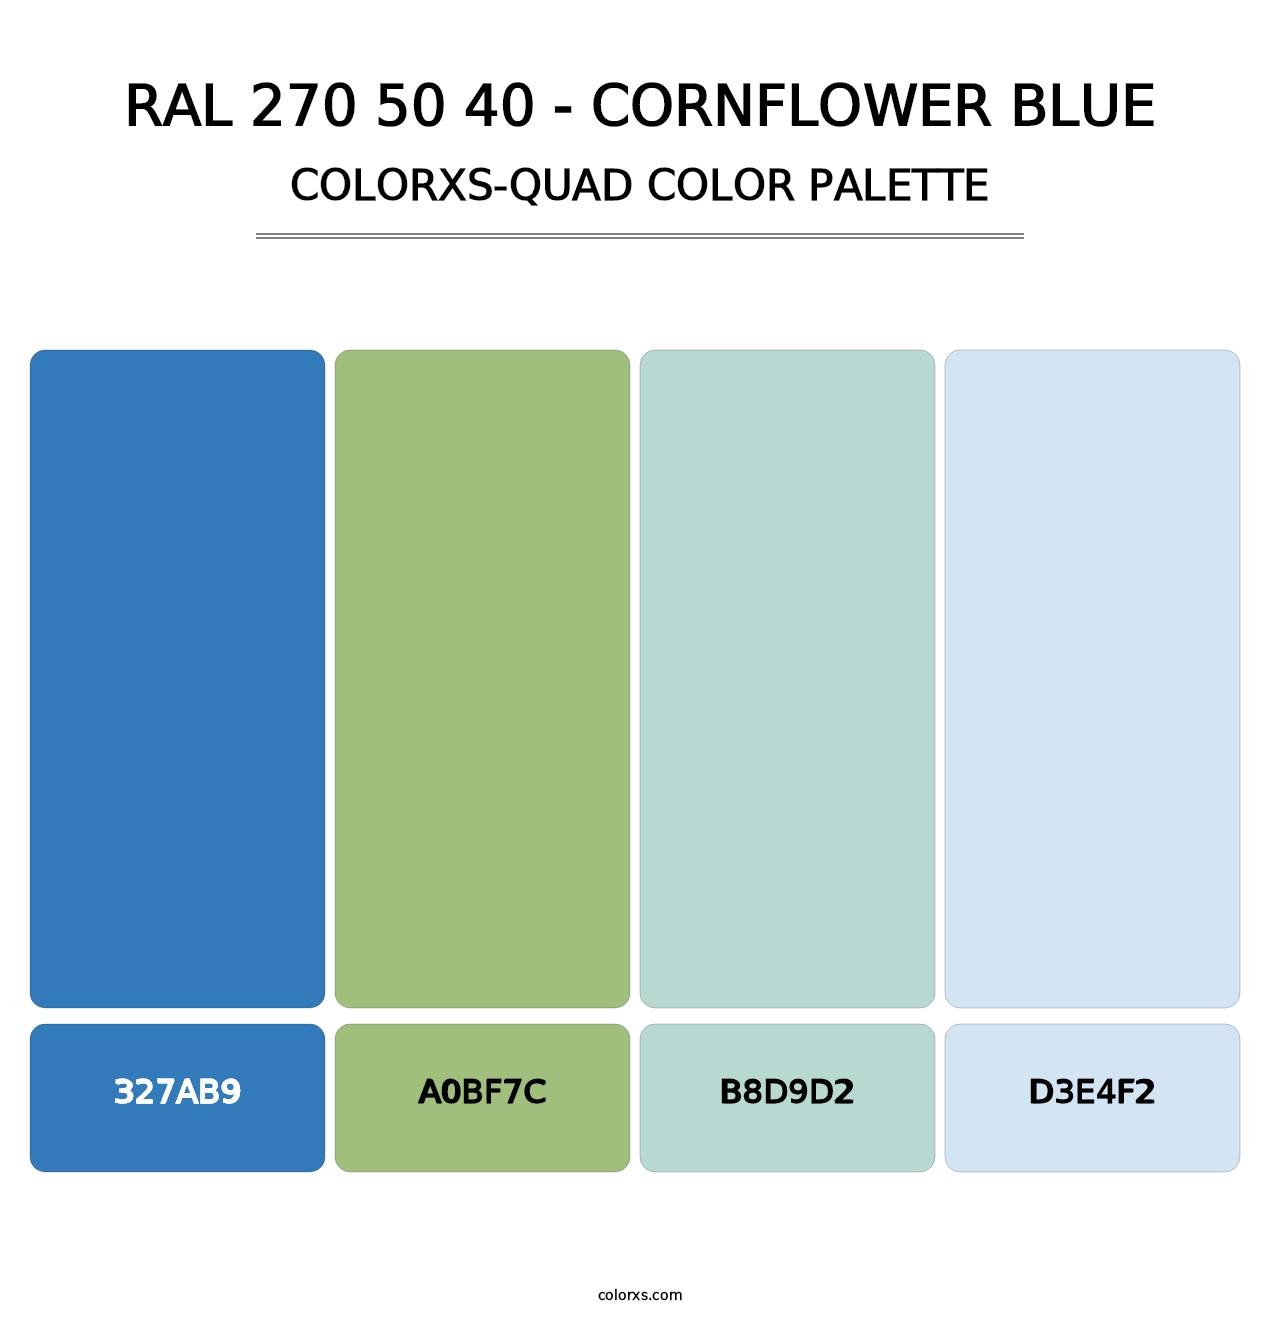 RAL 270 50 40 - Cornflower Blue - Colorxs Quad Palette